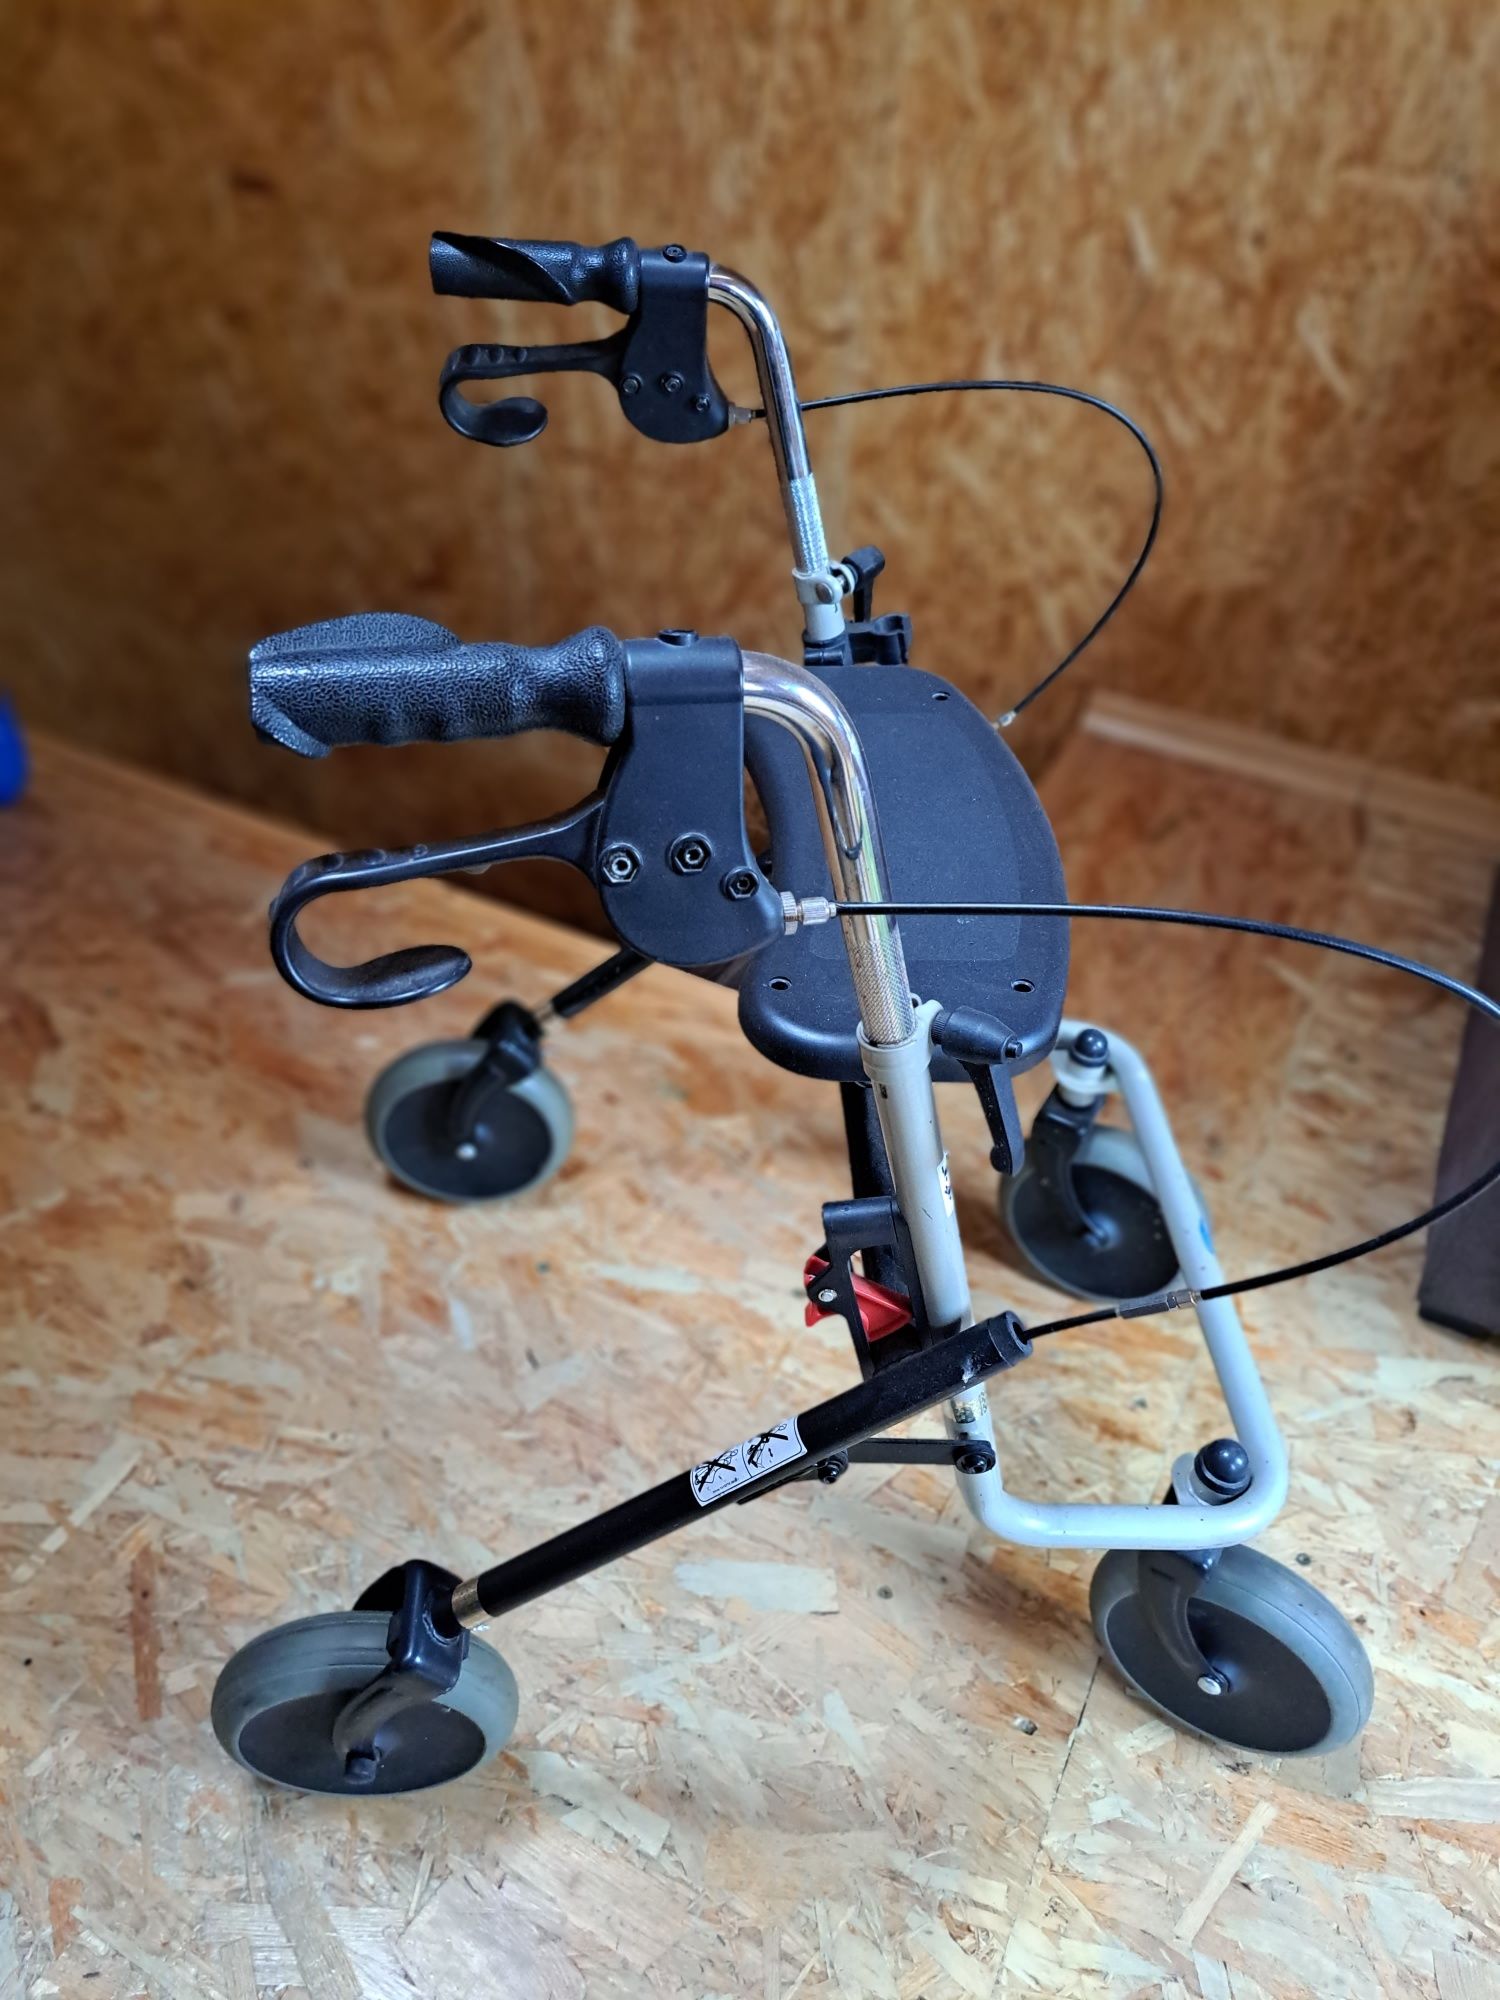 Chodzik,balkonik dla osób niepełnosprawnych